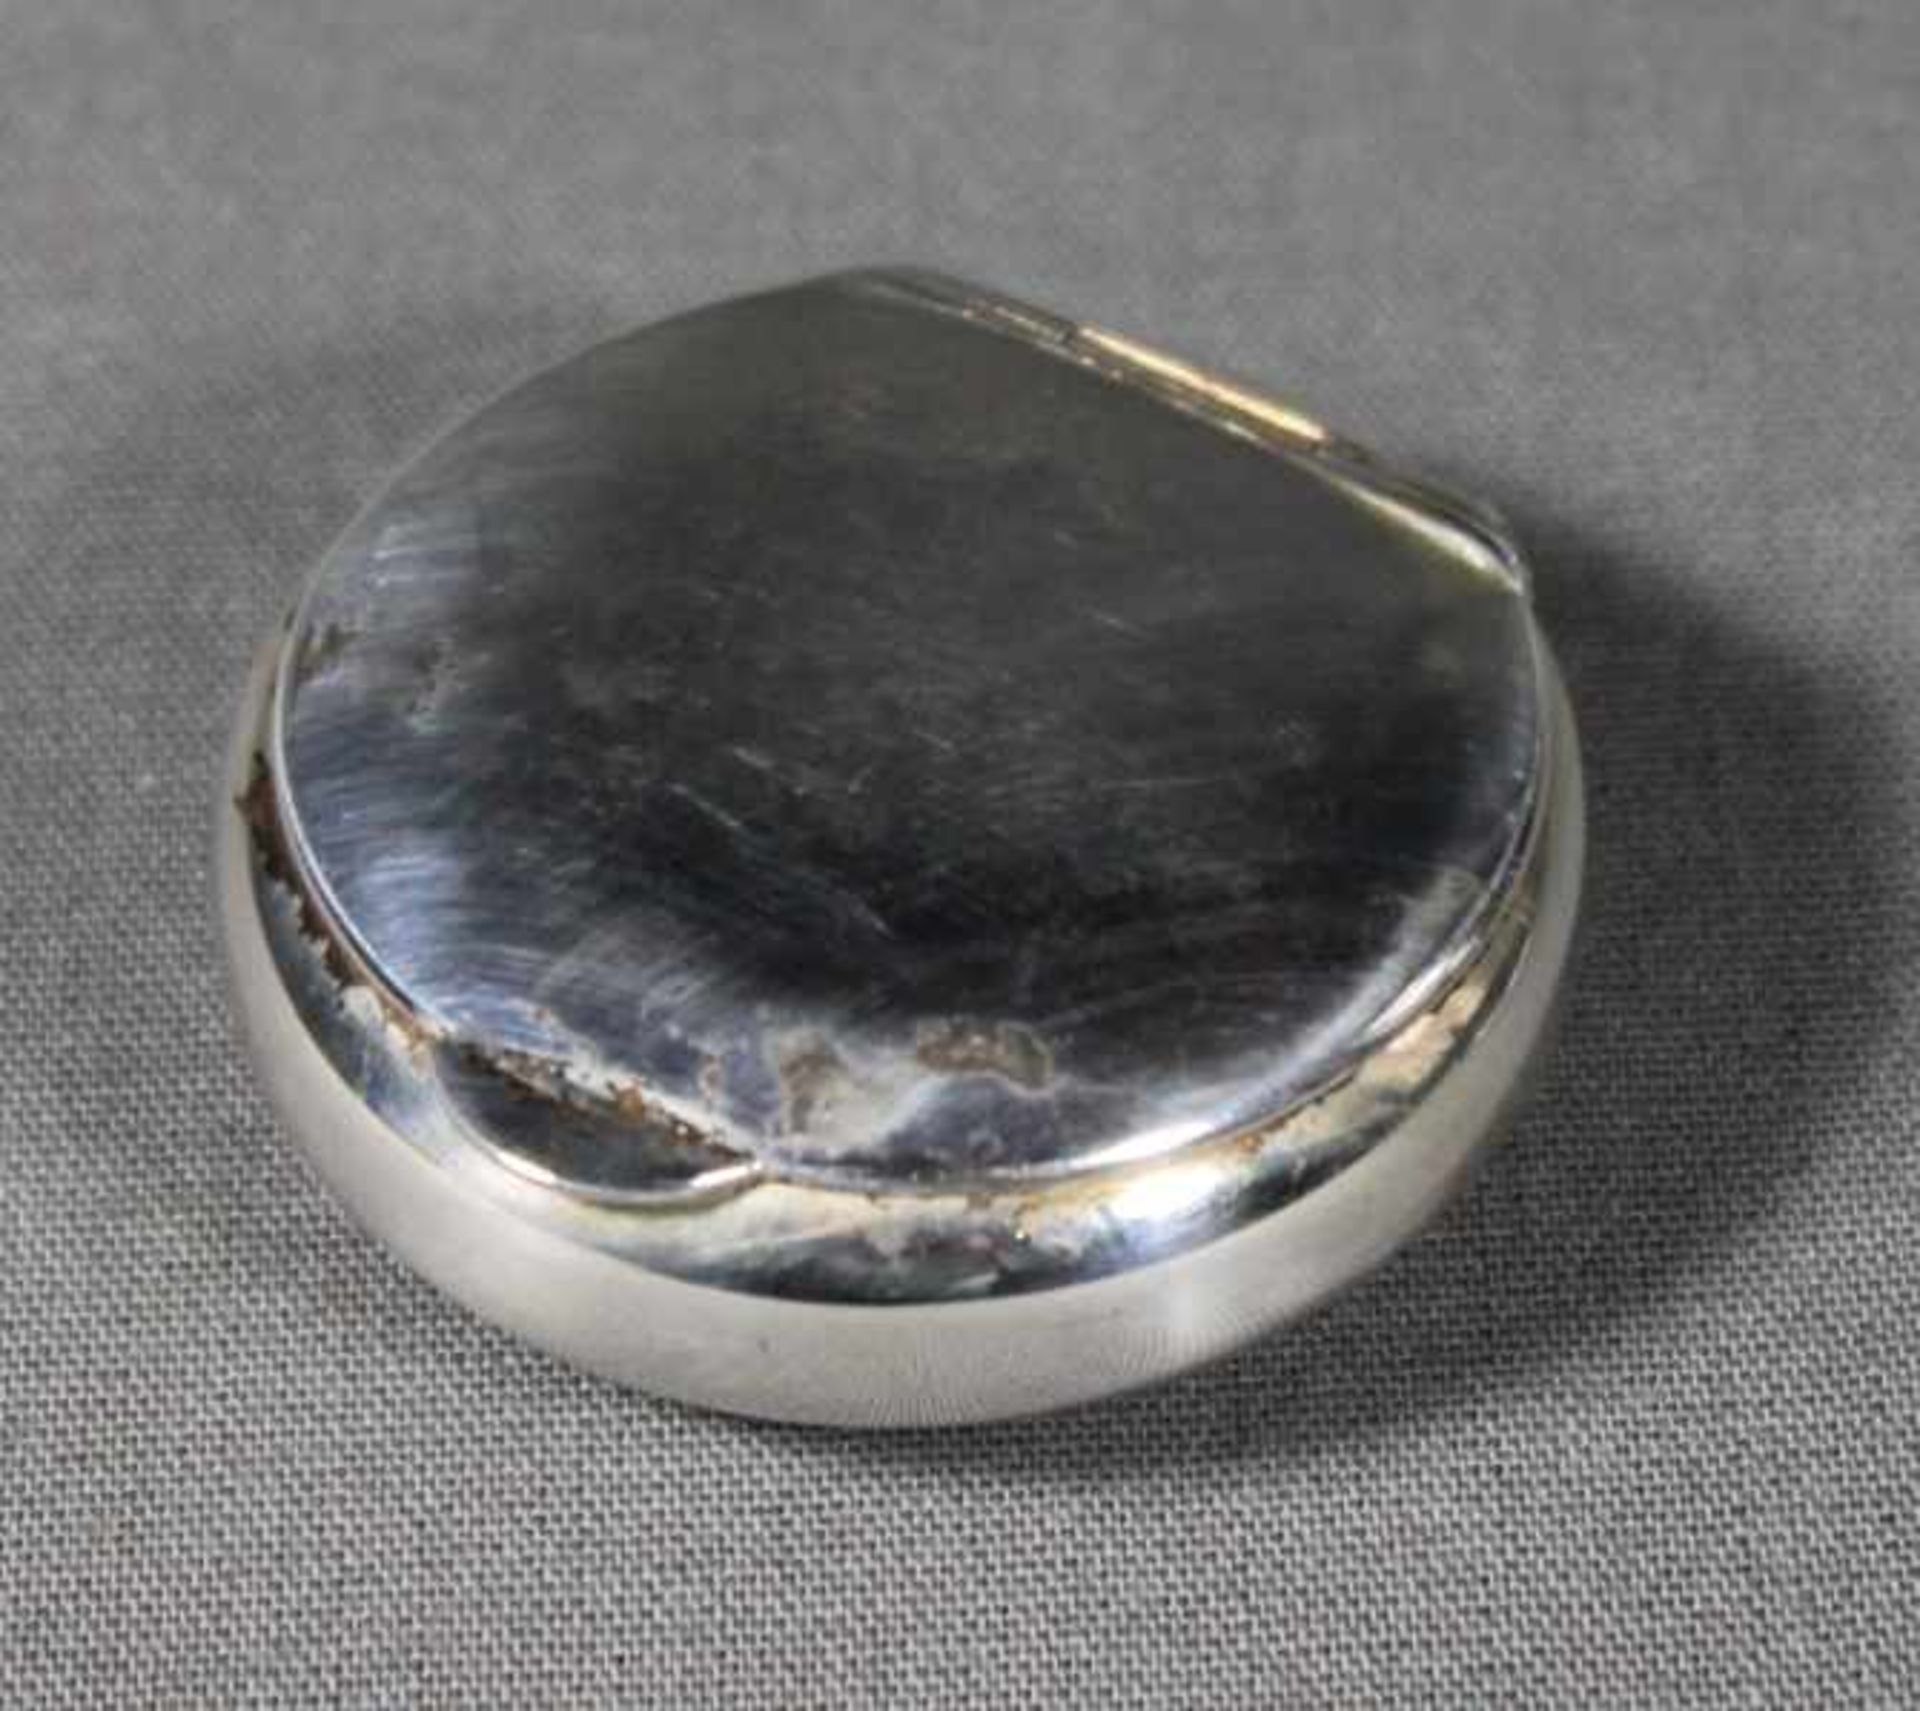 1 kleine runde Pillendose Silber (800/000), D ca. 5,5cm, H ca. 2cm, (ca. 29,5g)- - -23.50 % buyer'